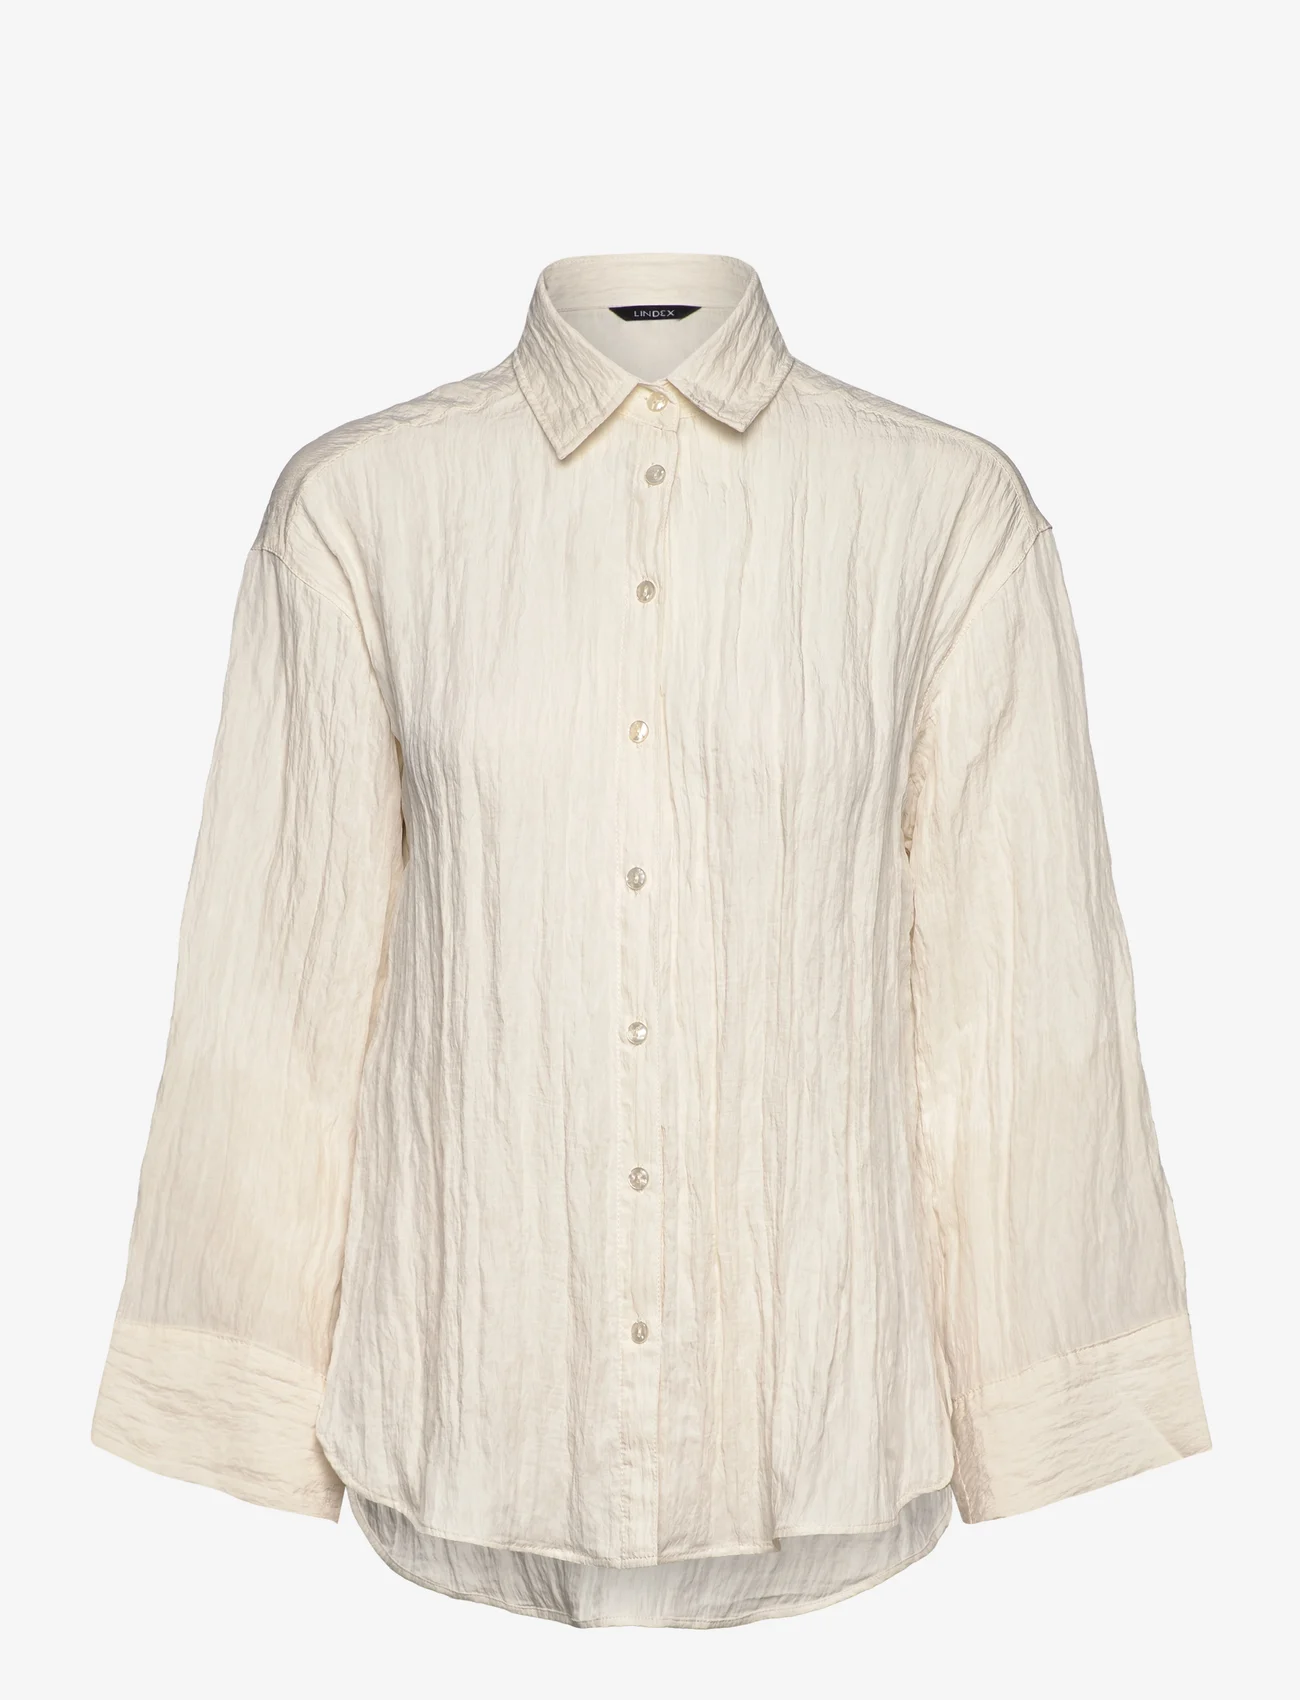 Lindex - Shirt Raven Crinkle - langärmlige hemden - light white - 0